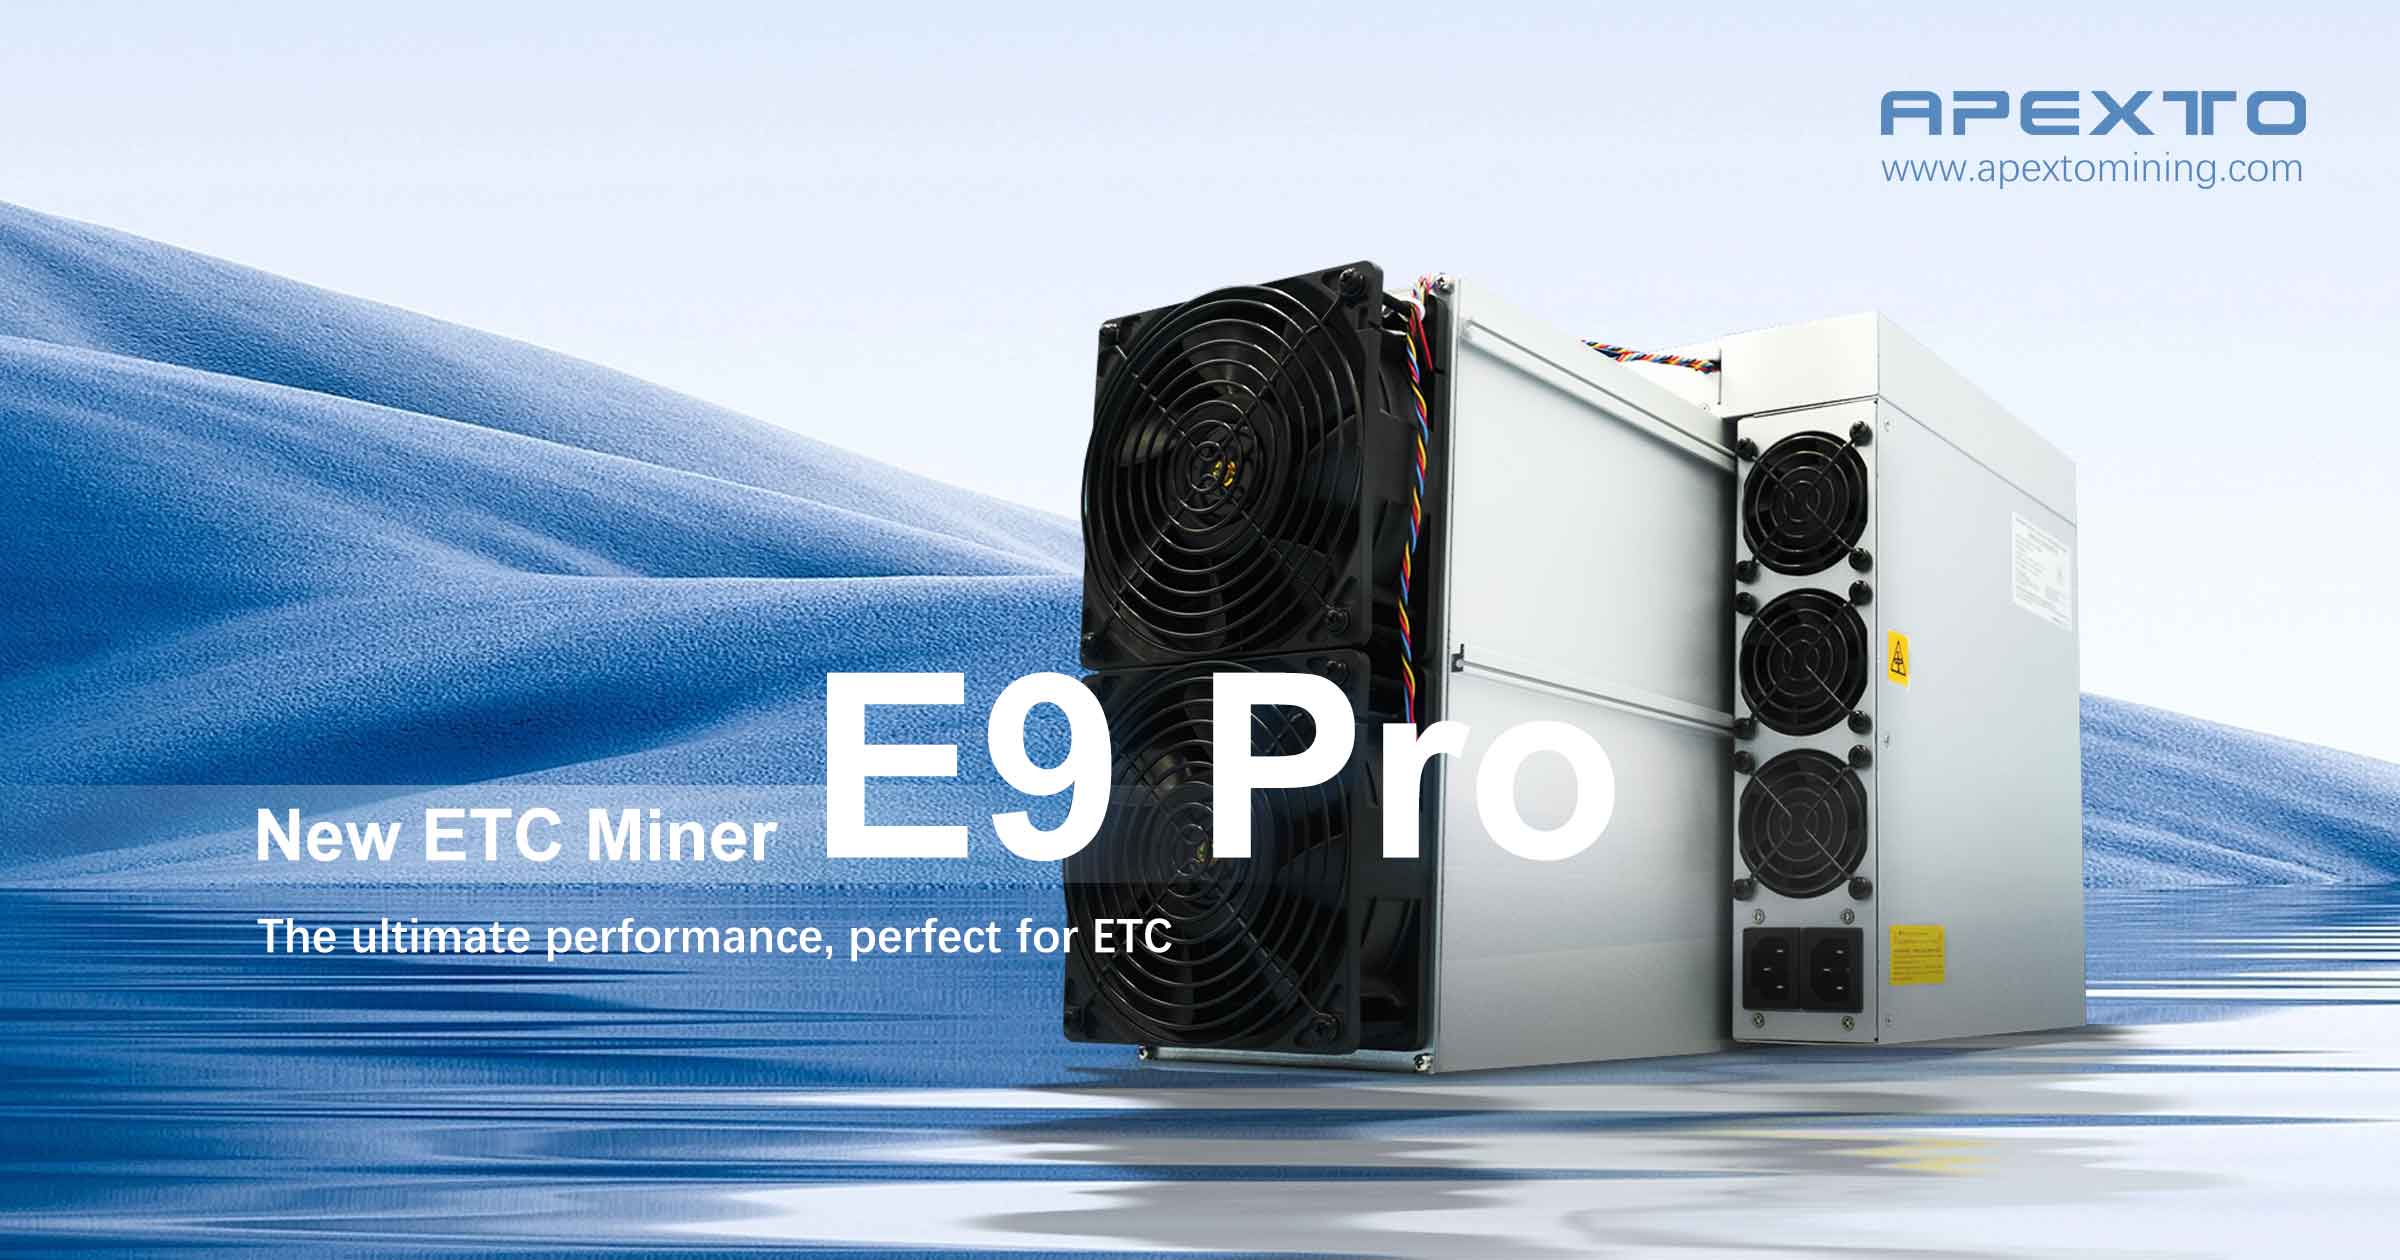 Bitmain-ek Ethereum Classic Miner errentagarriena kaleratu berri du!Antminer E9 Pro ETC Miner